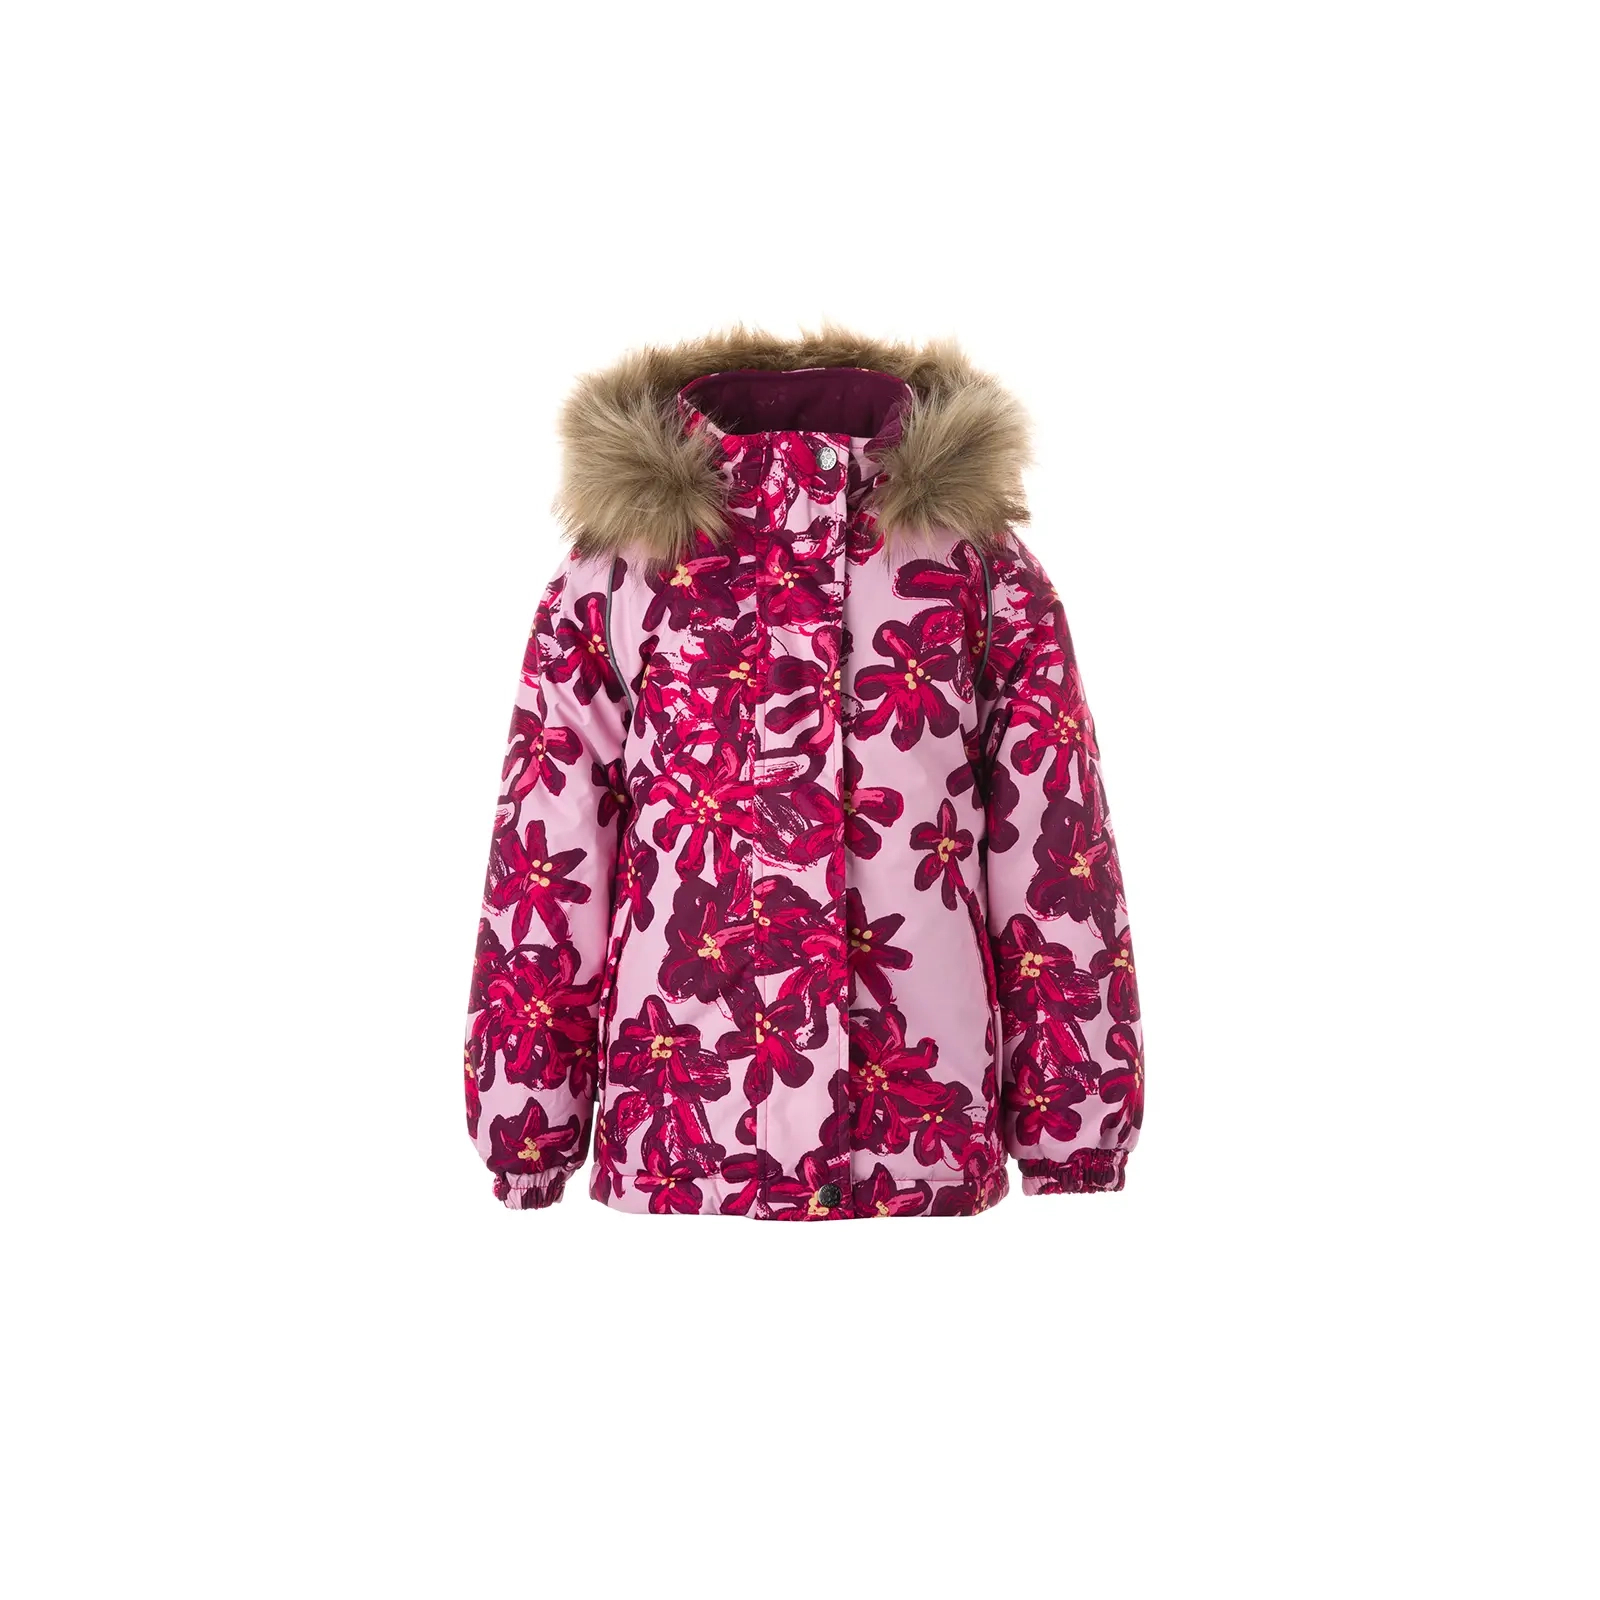 Куртка Huppa ALONDRA 18420030 розовый с принтом 98 (4741632030251)